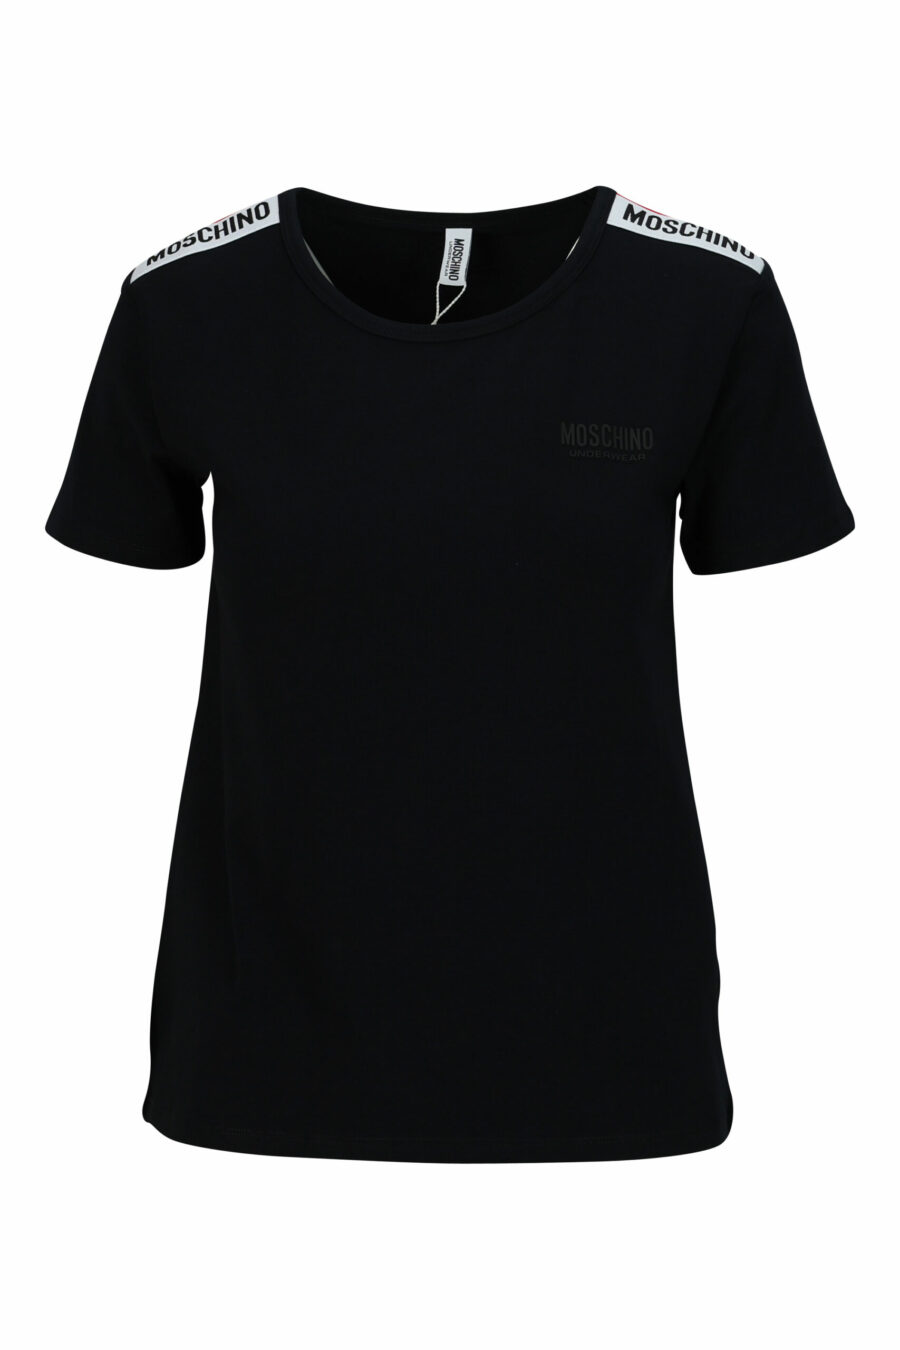 Camiseta negra con logo en cinta hombros monocromático - 667113696690 scaled